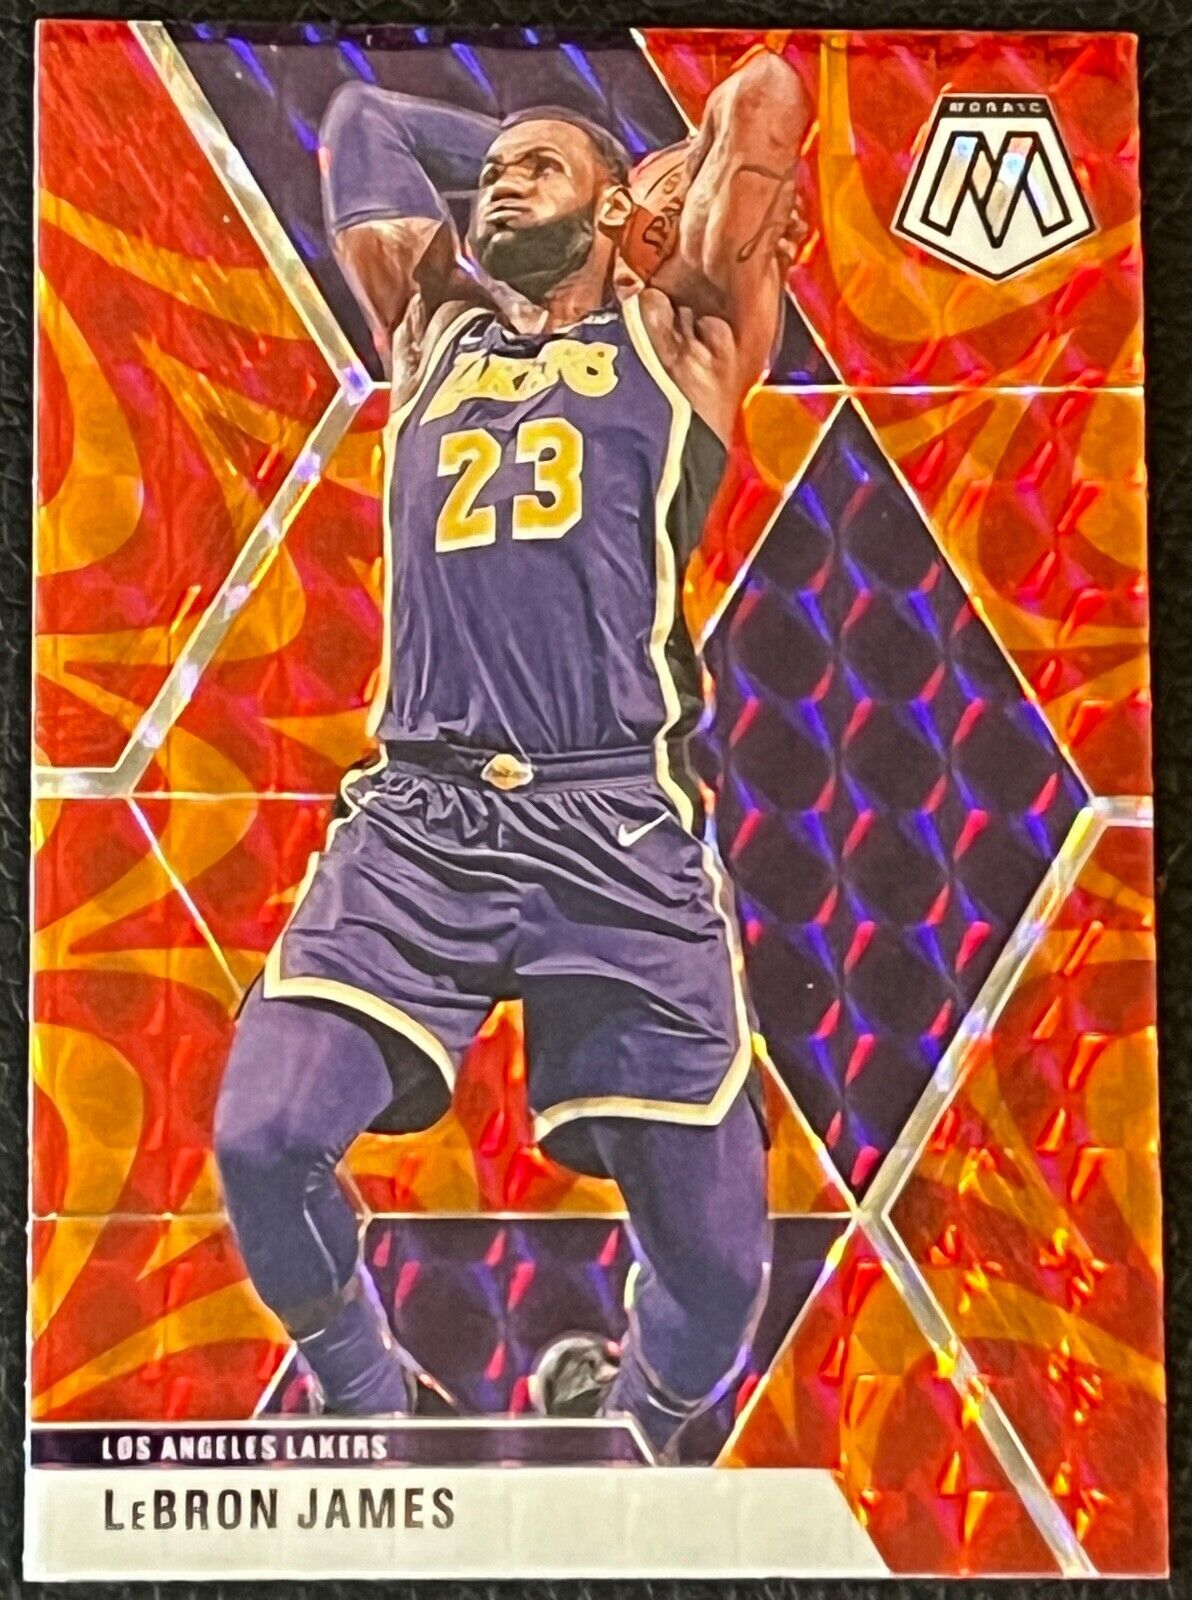 2019-20 Panini Mosaic Orange Reactive #8 LeBron James LA Lakers NBA basketball